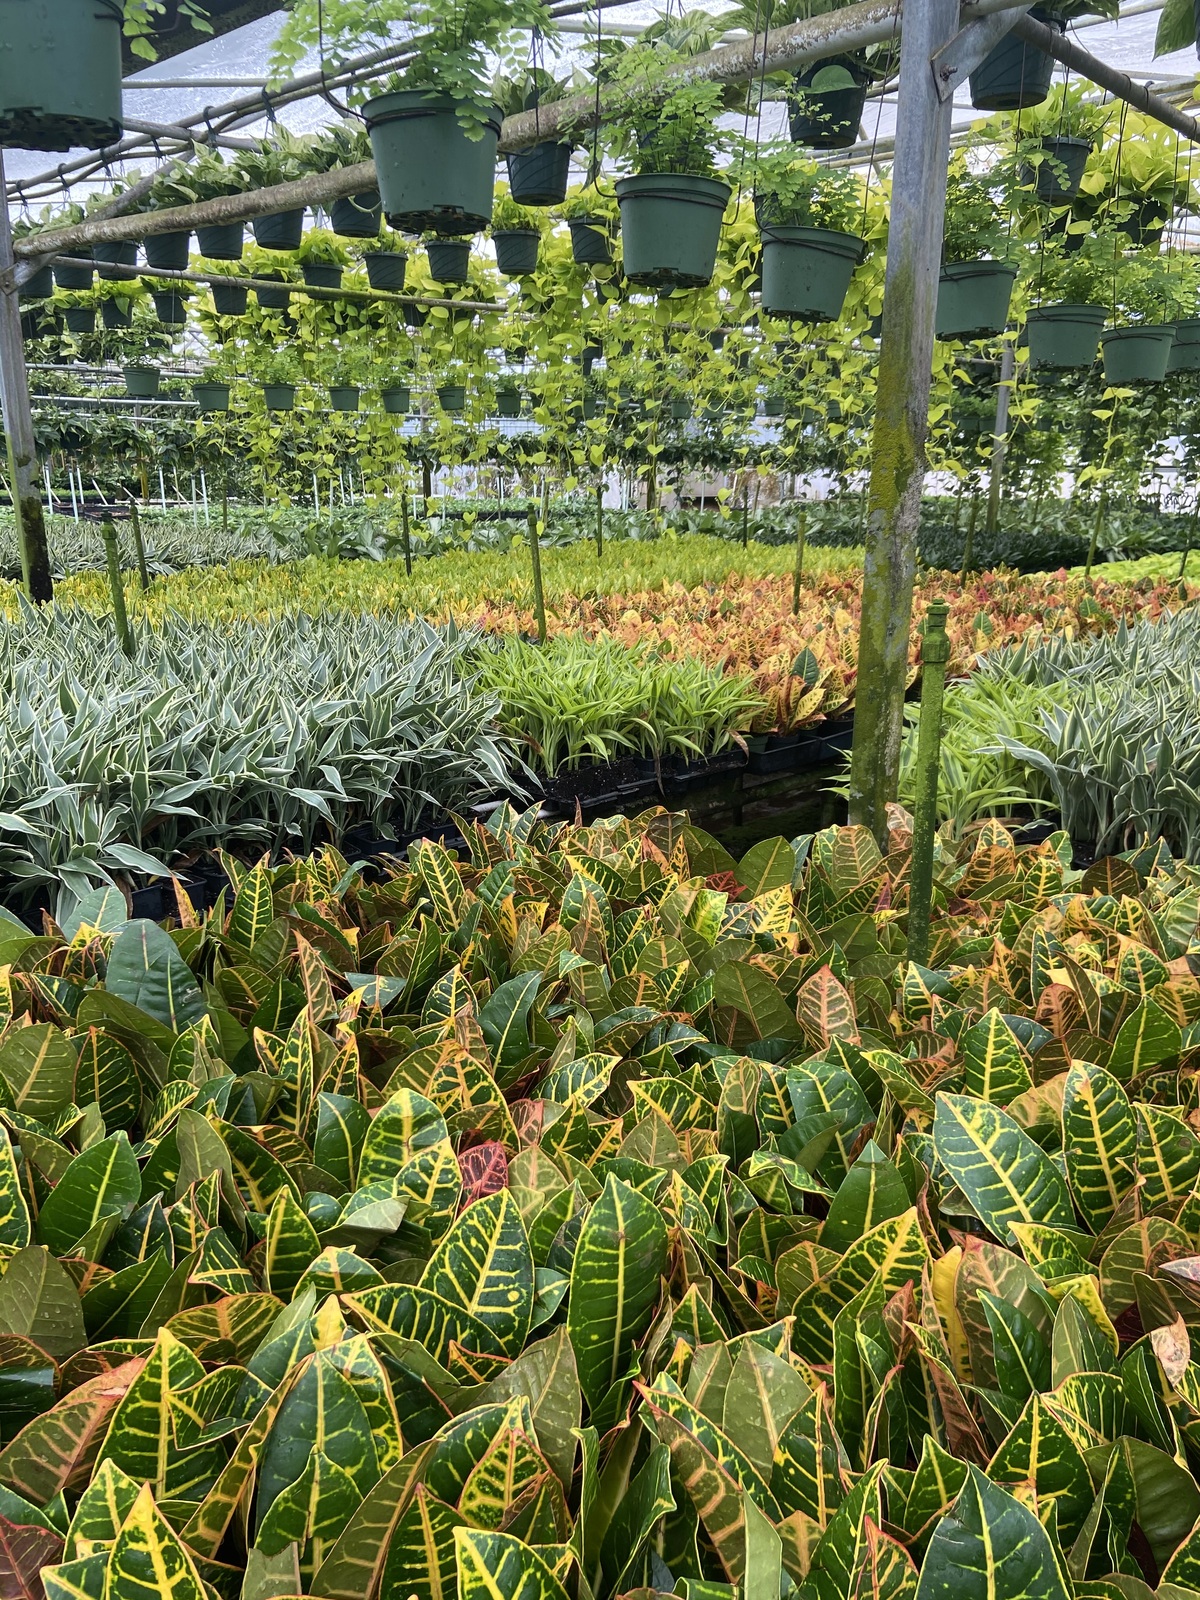 Ponkan Pines plant nursery